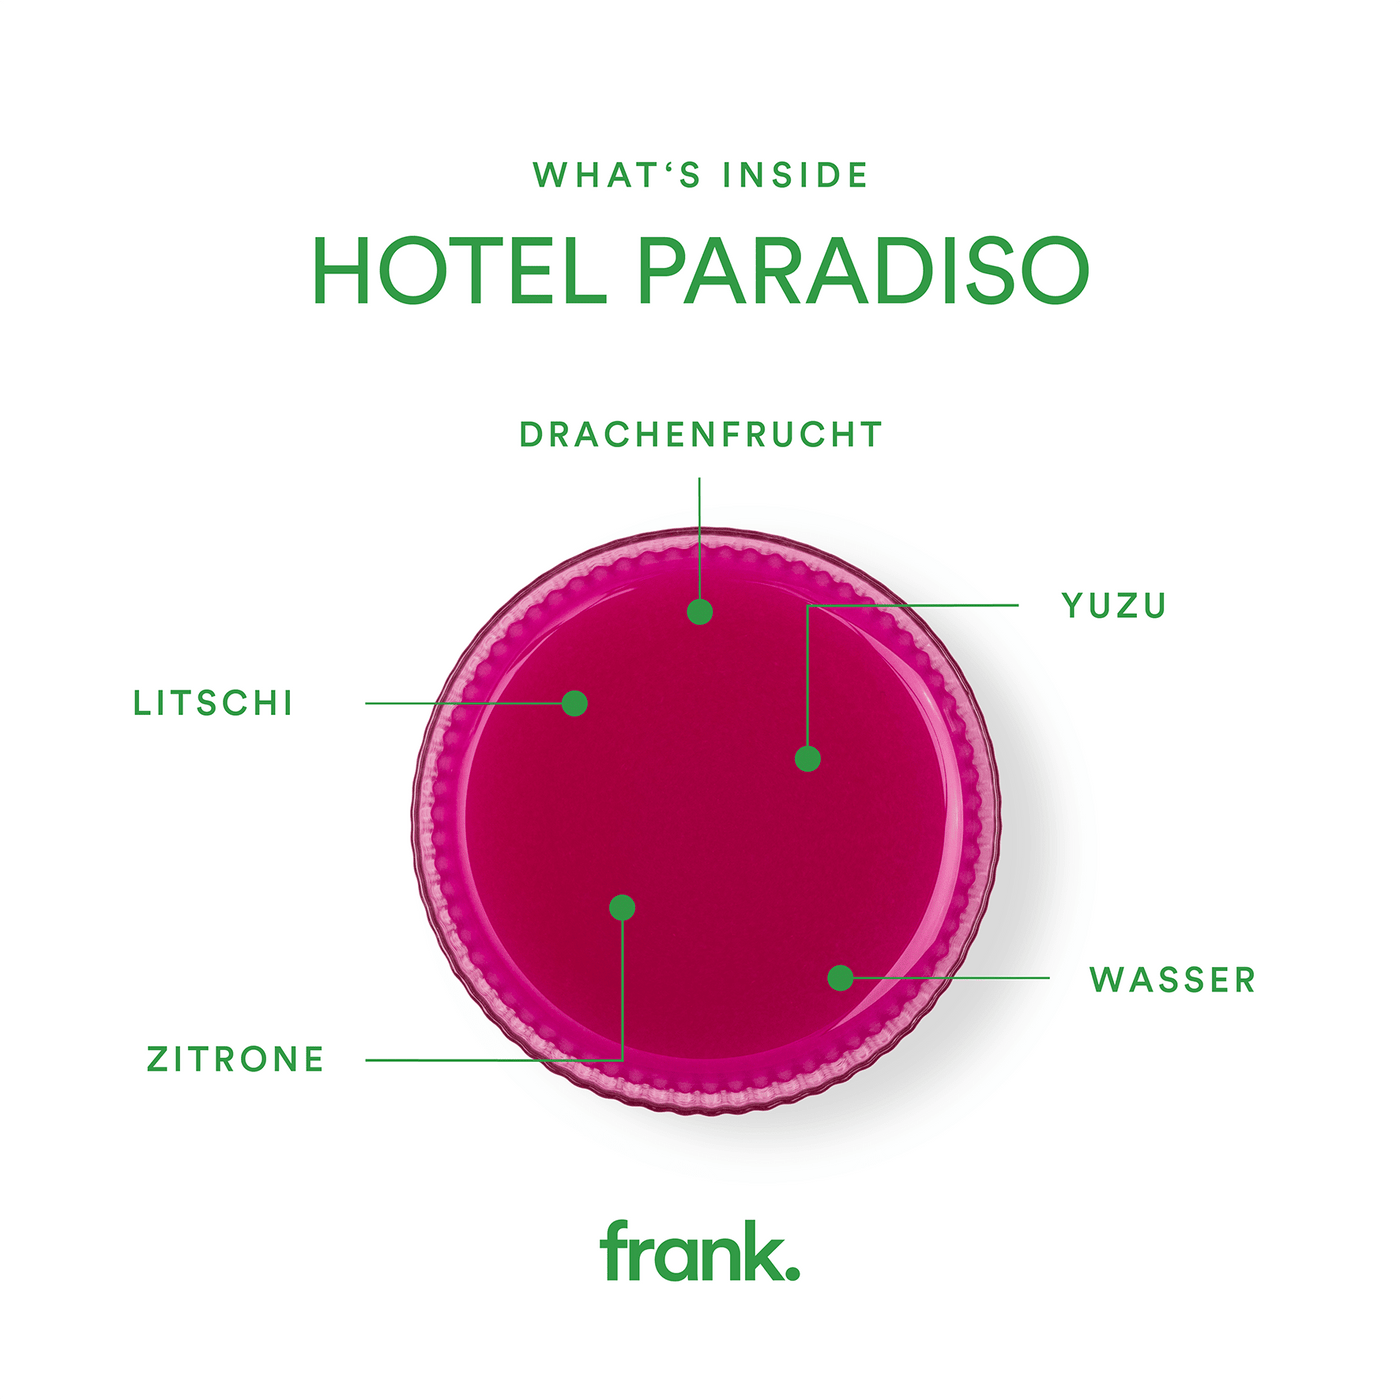 Darstellung des Saft Hotel Paradiso mit Litschi, Drachenfrucht, Yuzu und Zitrone in einem Glas von frank